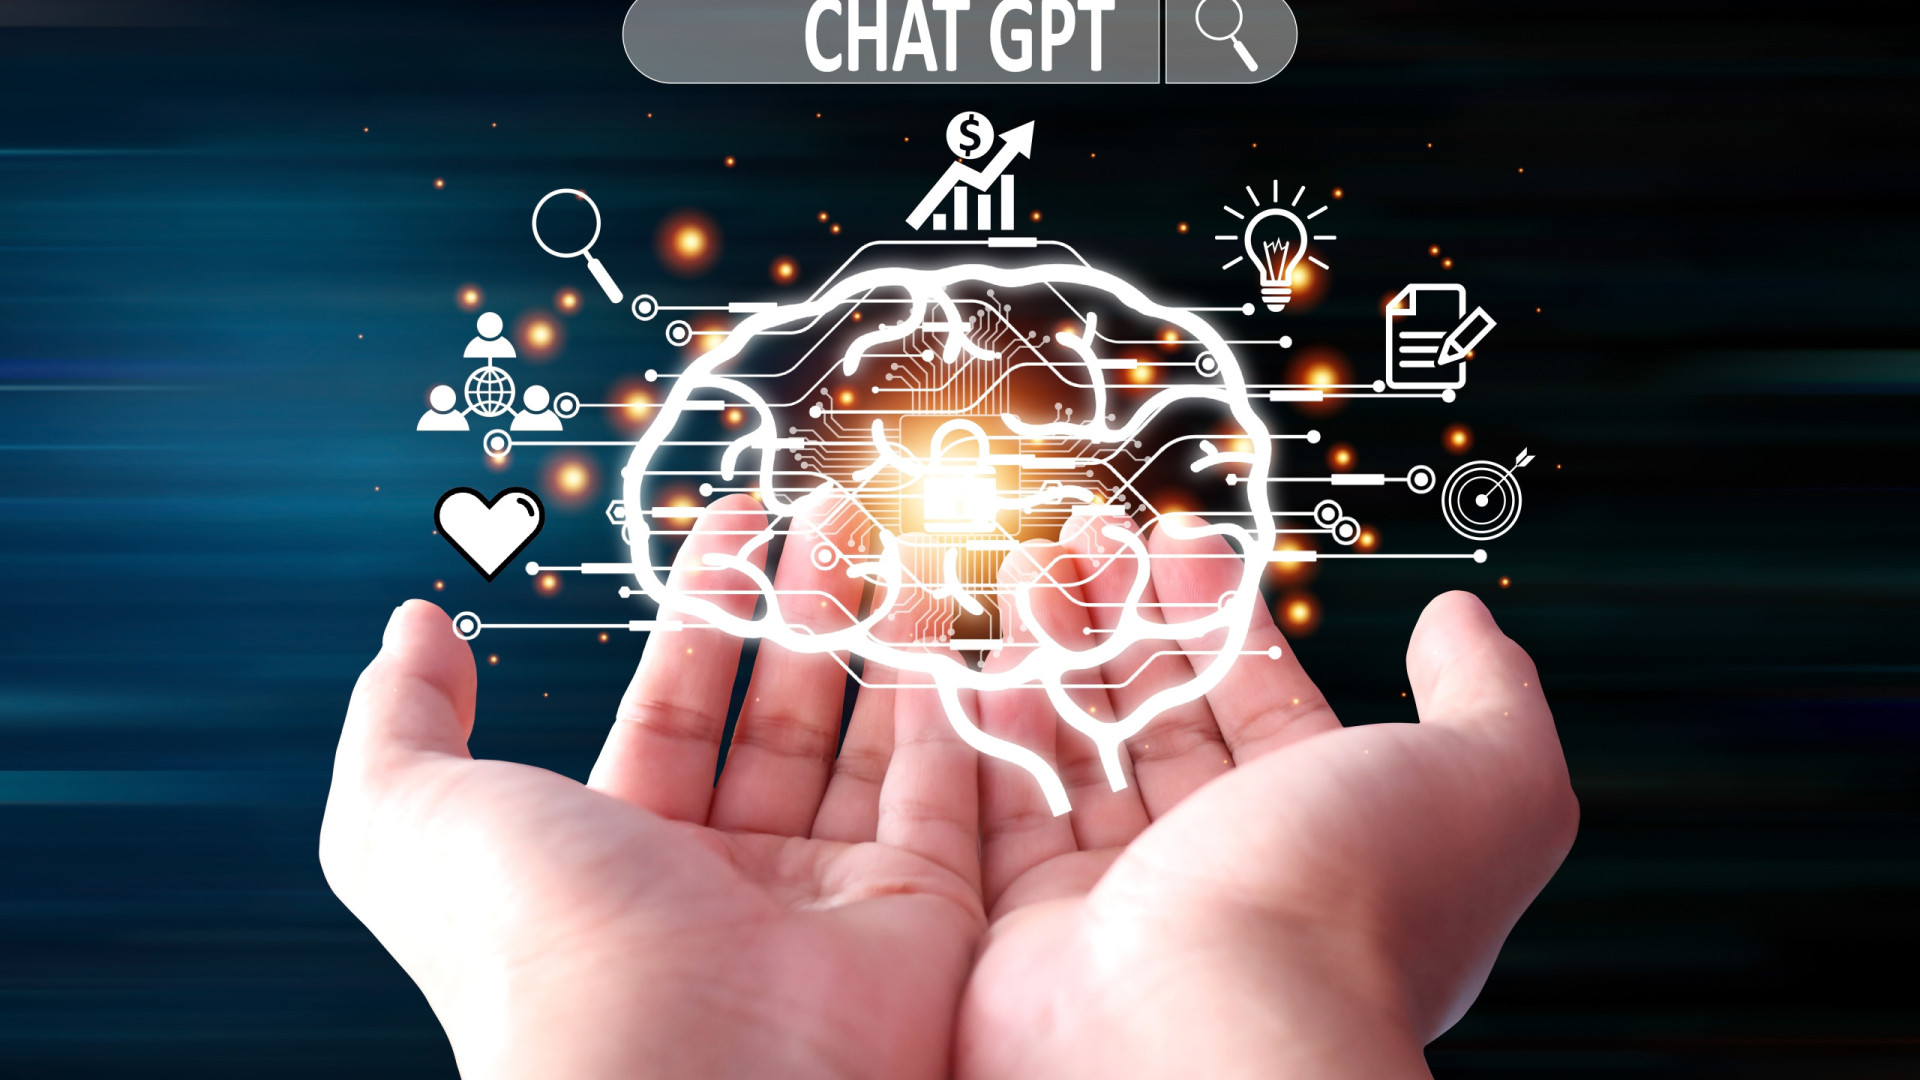 Diálogo com robô: como funciona o ChatGPT e por que ele é polêmico